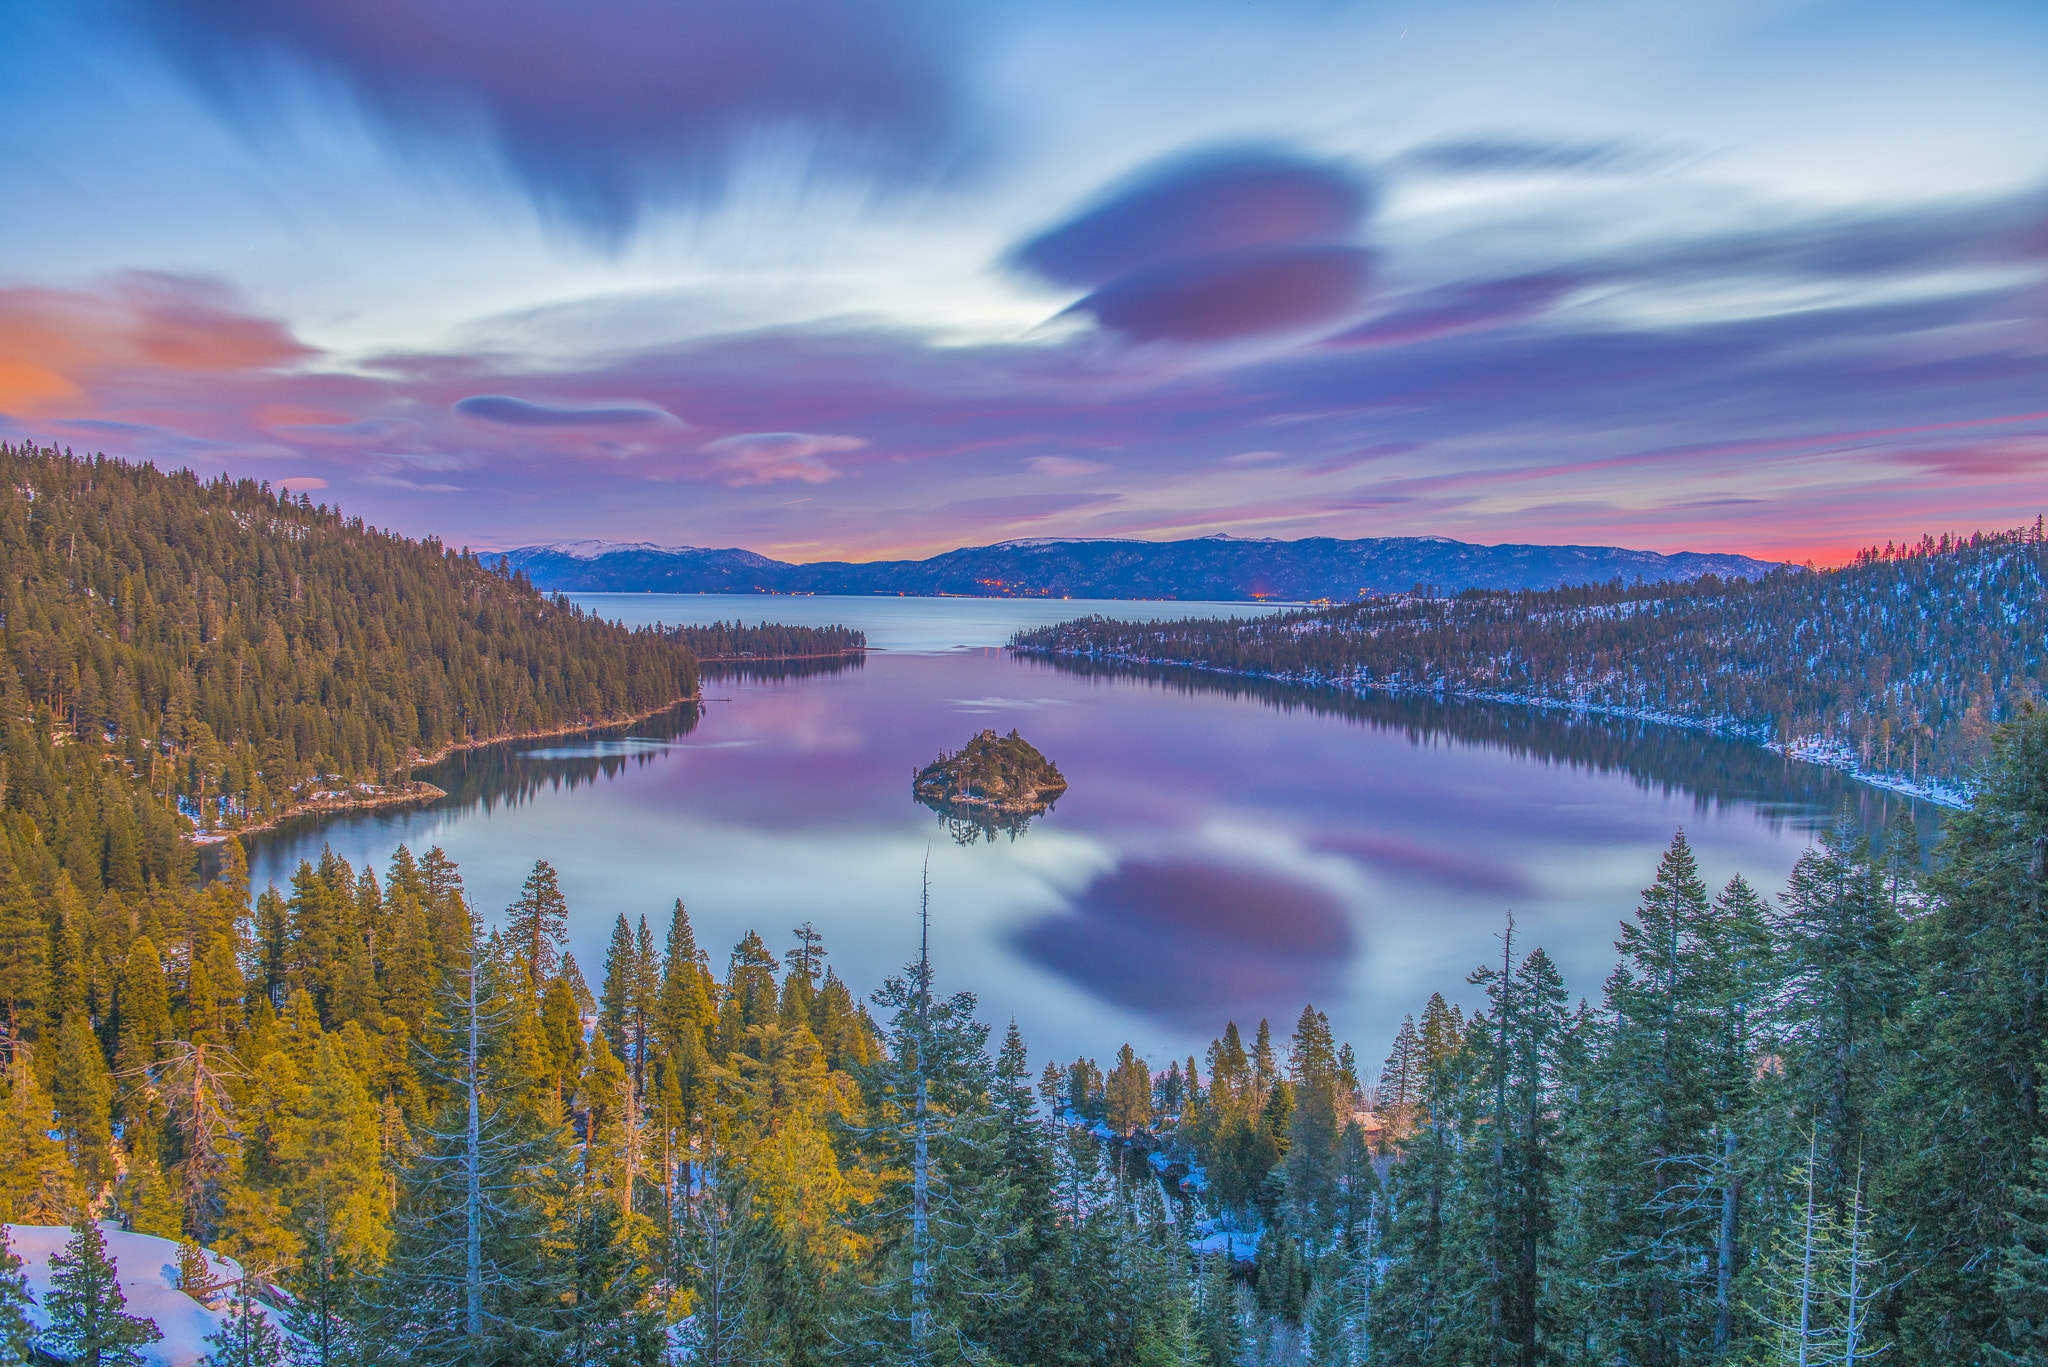 Скачайте бесплатное фото о Emerald Bay State Park South Lake Tahoe осень. 